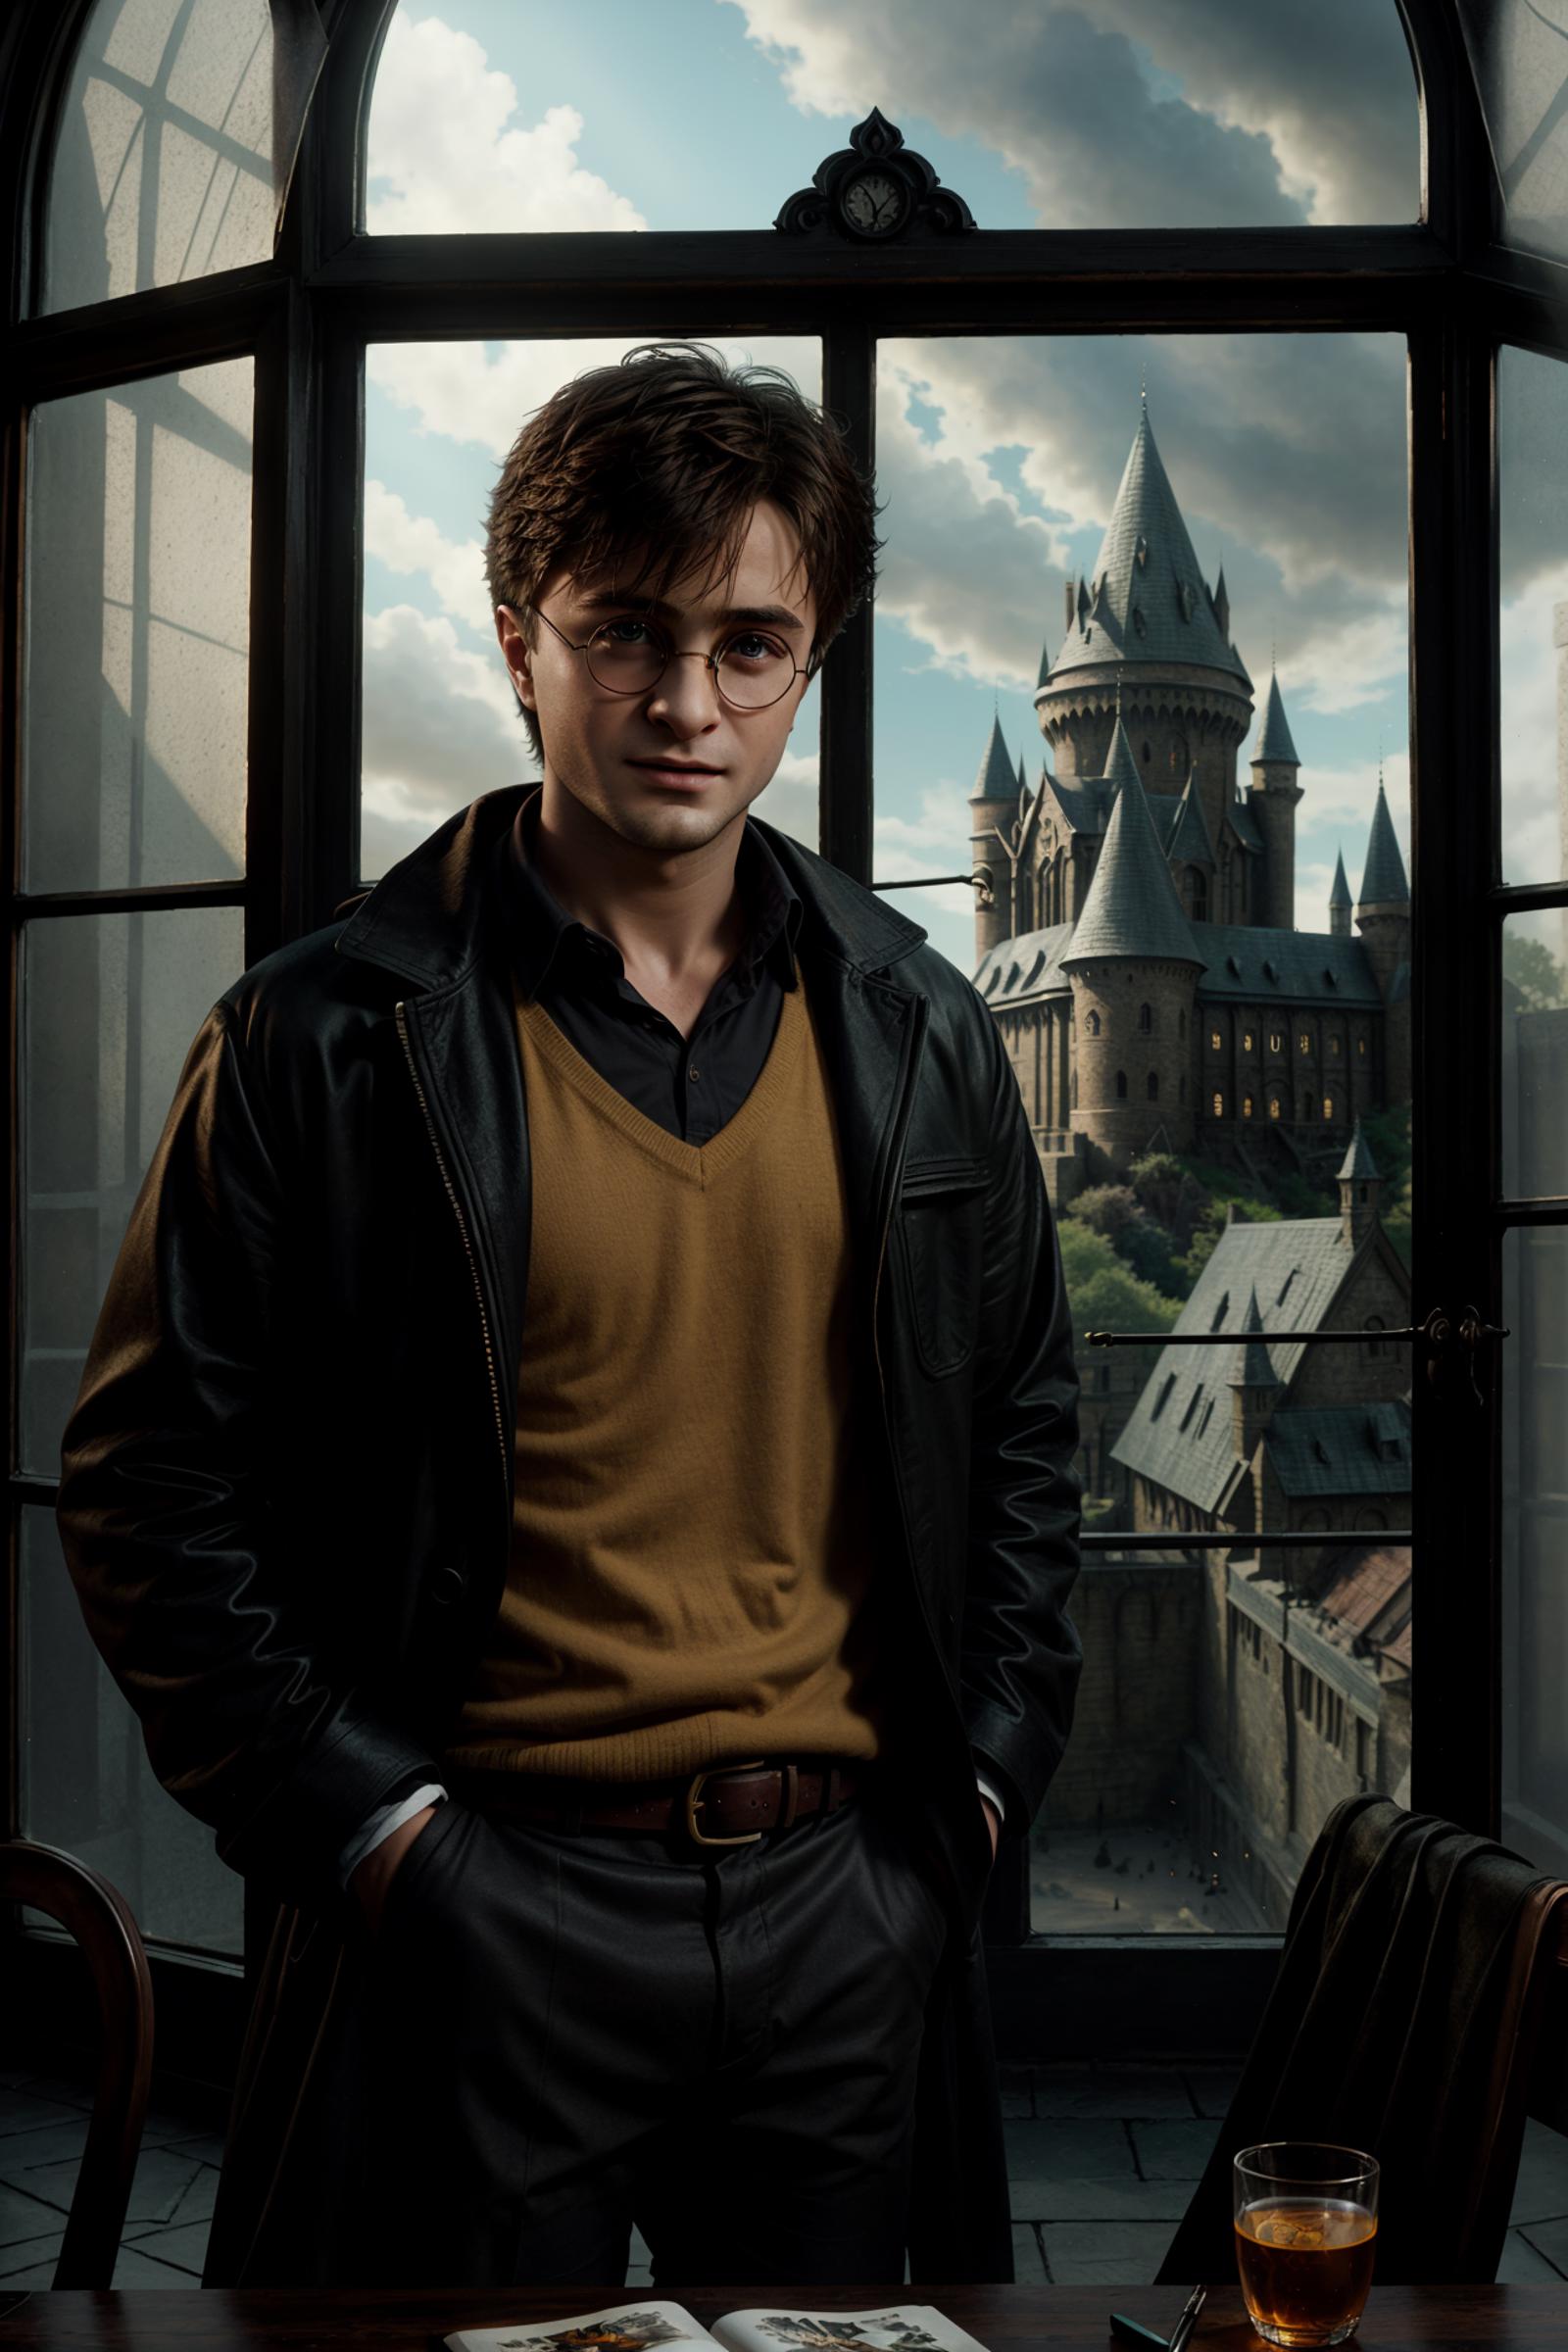 Harry Potter (Daniel Radcliffe) 2010-2011 image by XxsatornxX